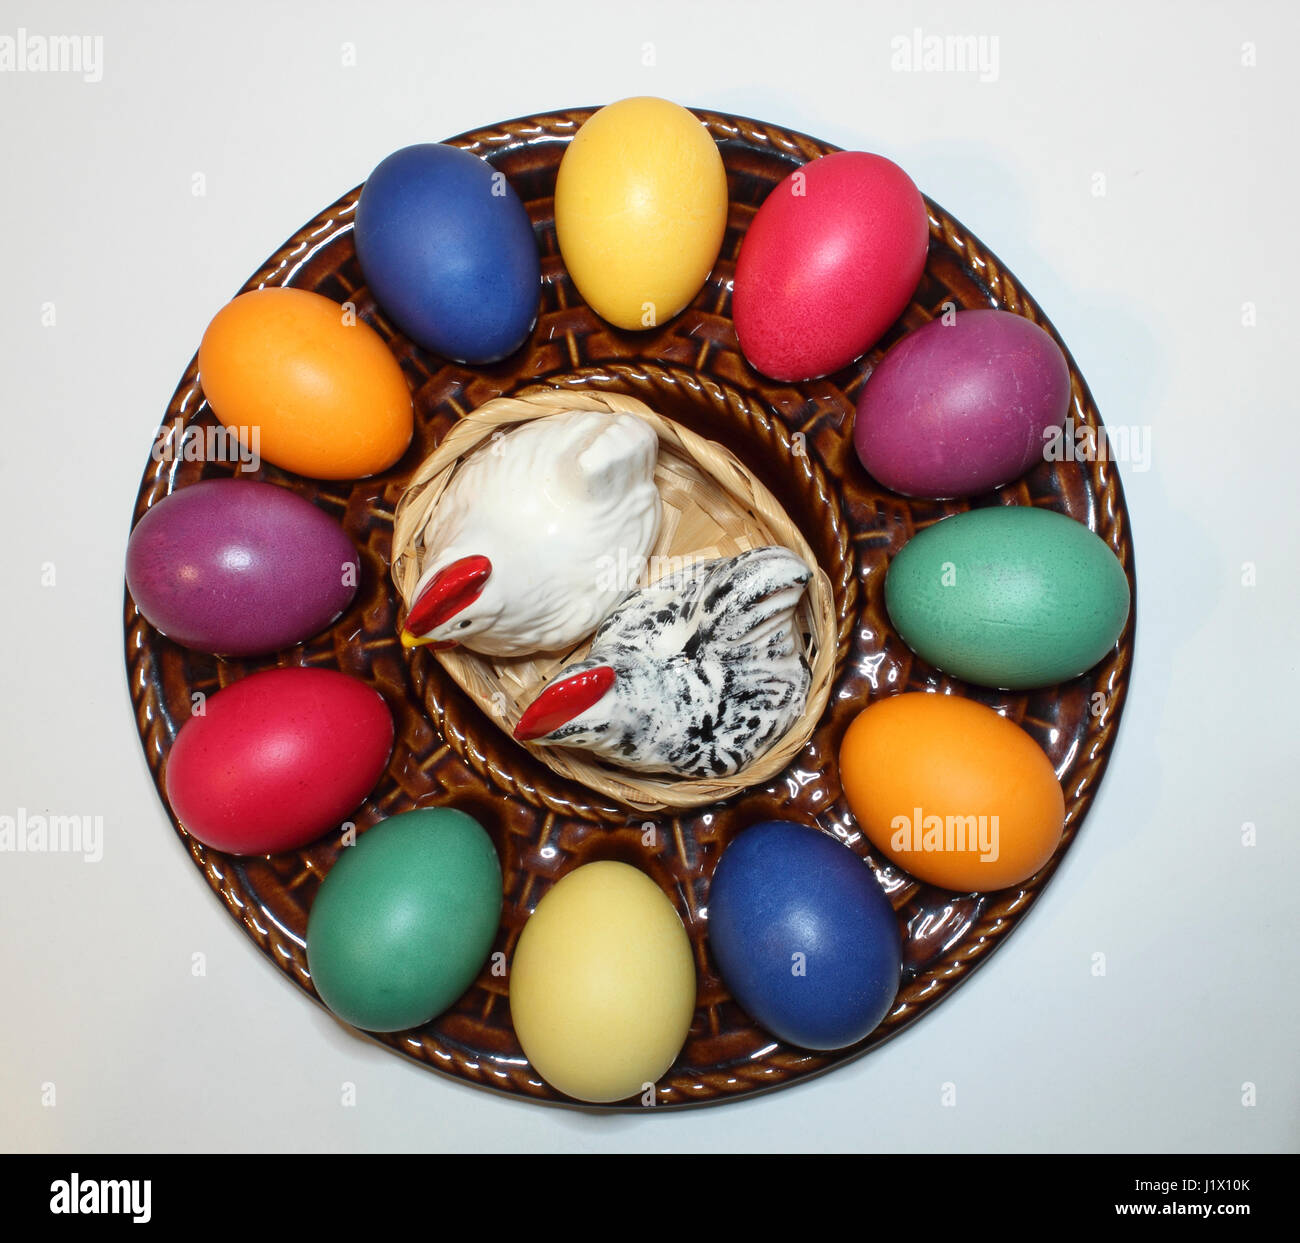 Bunte Ostereier en mit einem Keramik-Teller Porzellanhühnern als Salz-und Pfefferstreuer; de color de huevos de Pascua en una cerámica placa de huevo Foto de stock